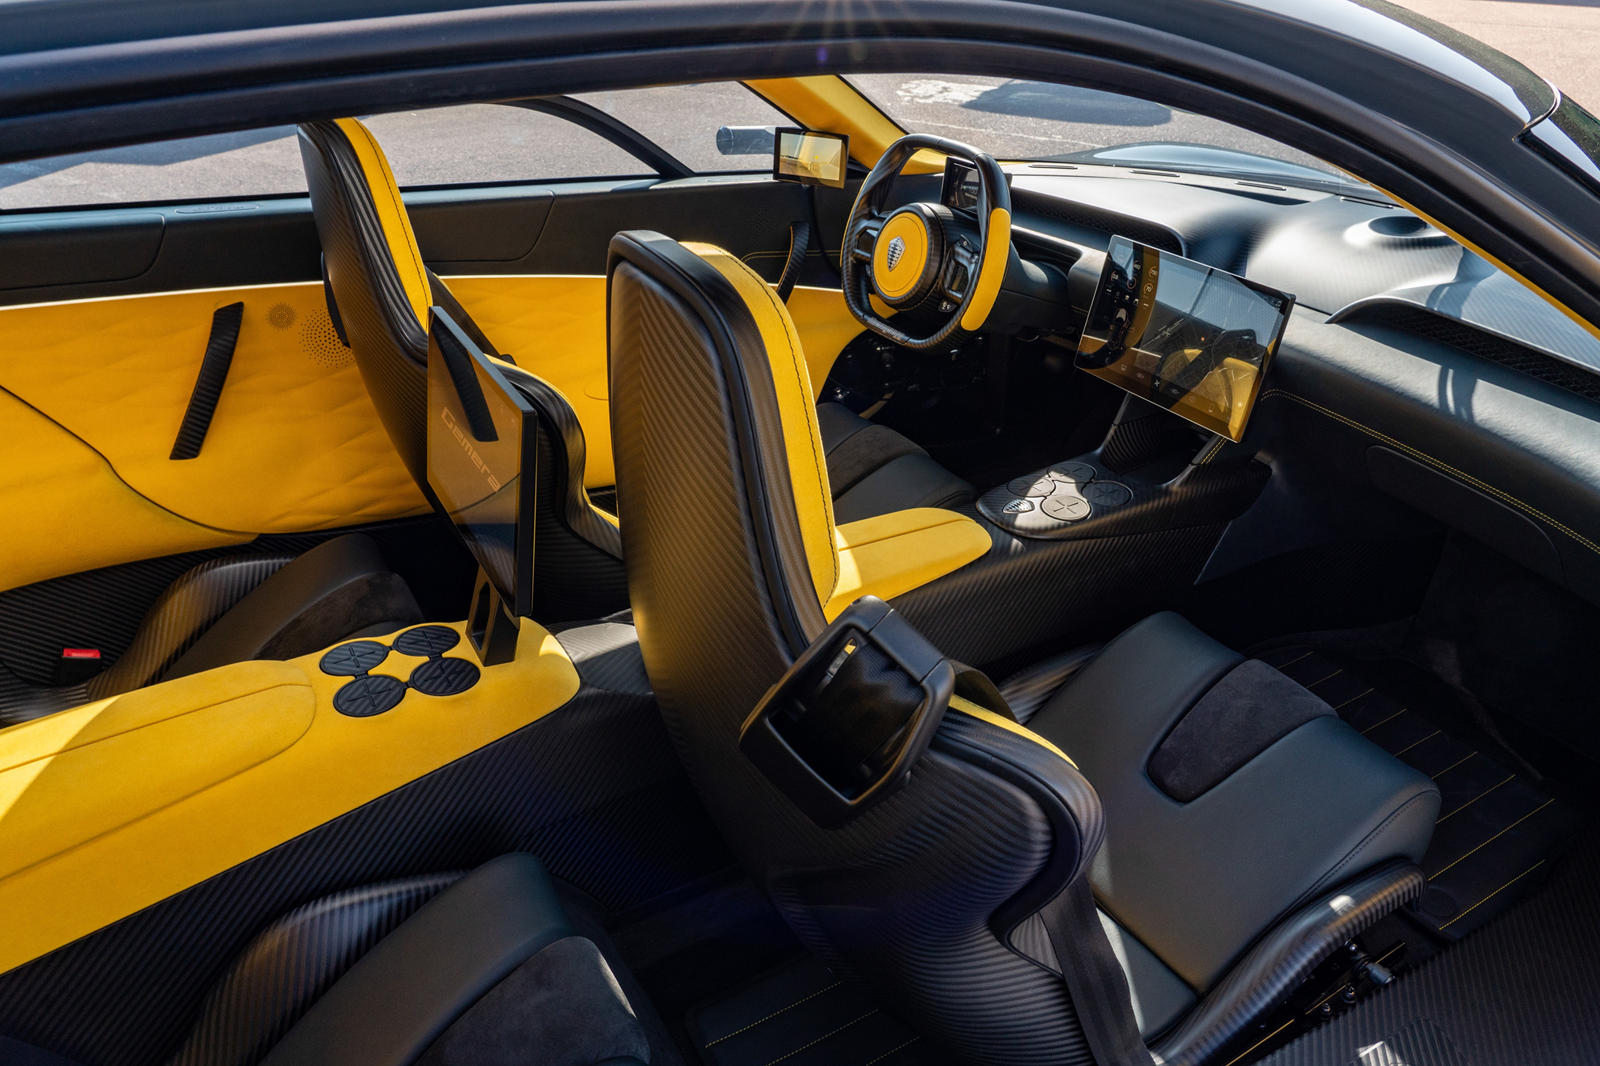 «Сильный и стабильный рост Koenigsegg как в операционном, так и в финансовом отношении позволяет нам выкупить долю NEVS в Meneko и получить полную собственность в совместном предприятии», - сказал фон Кенигсегг. «Я хотел бы поблагодарить NEVS и их от